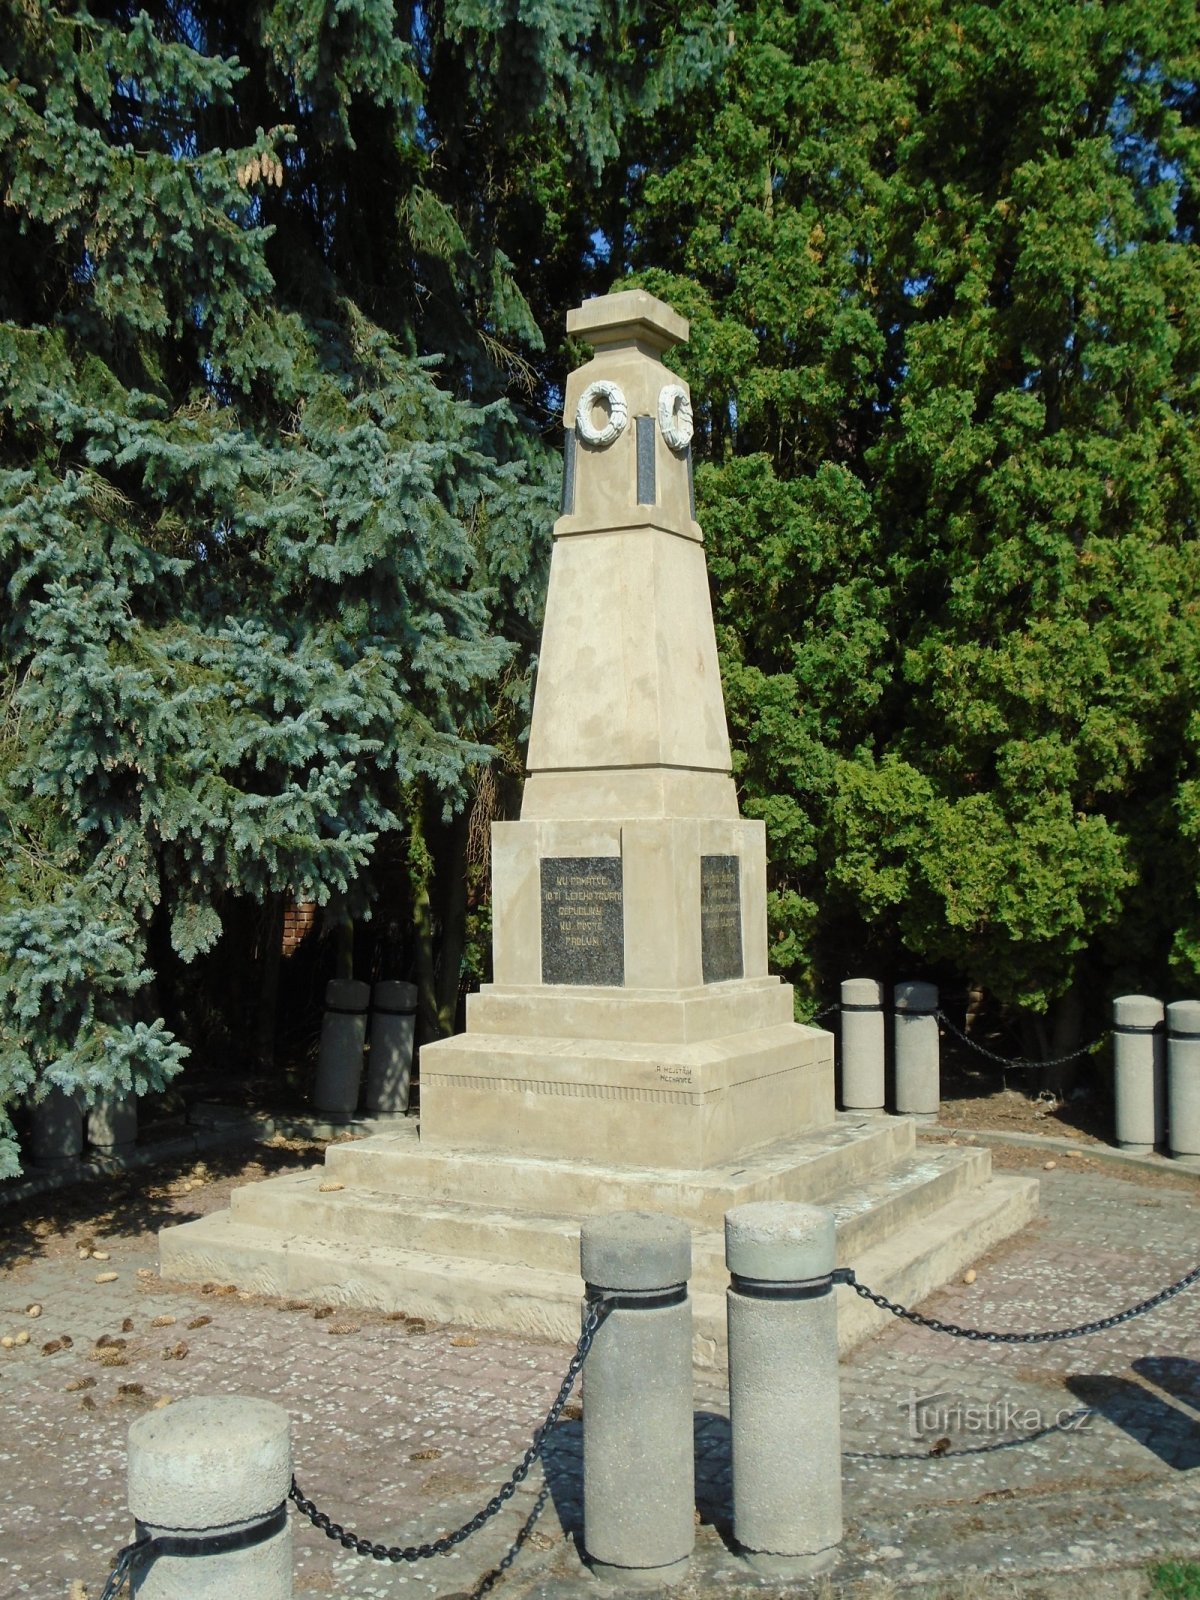 Monumentul celor care au murit în Primul Război Mondial (Wetbeard)